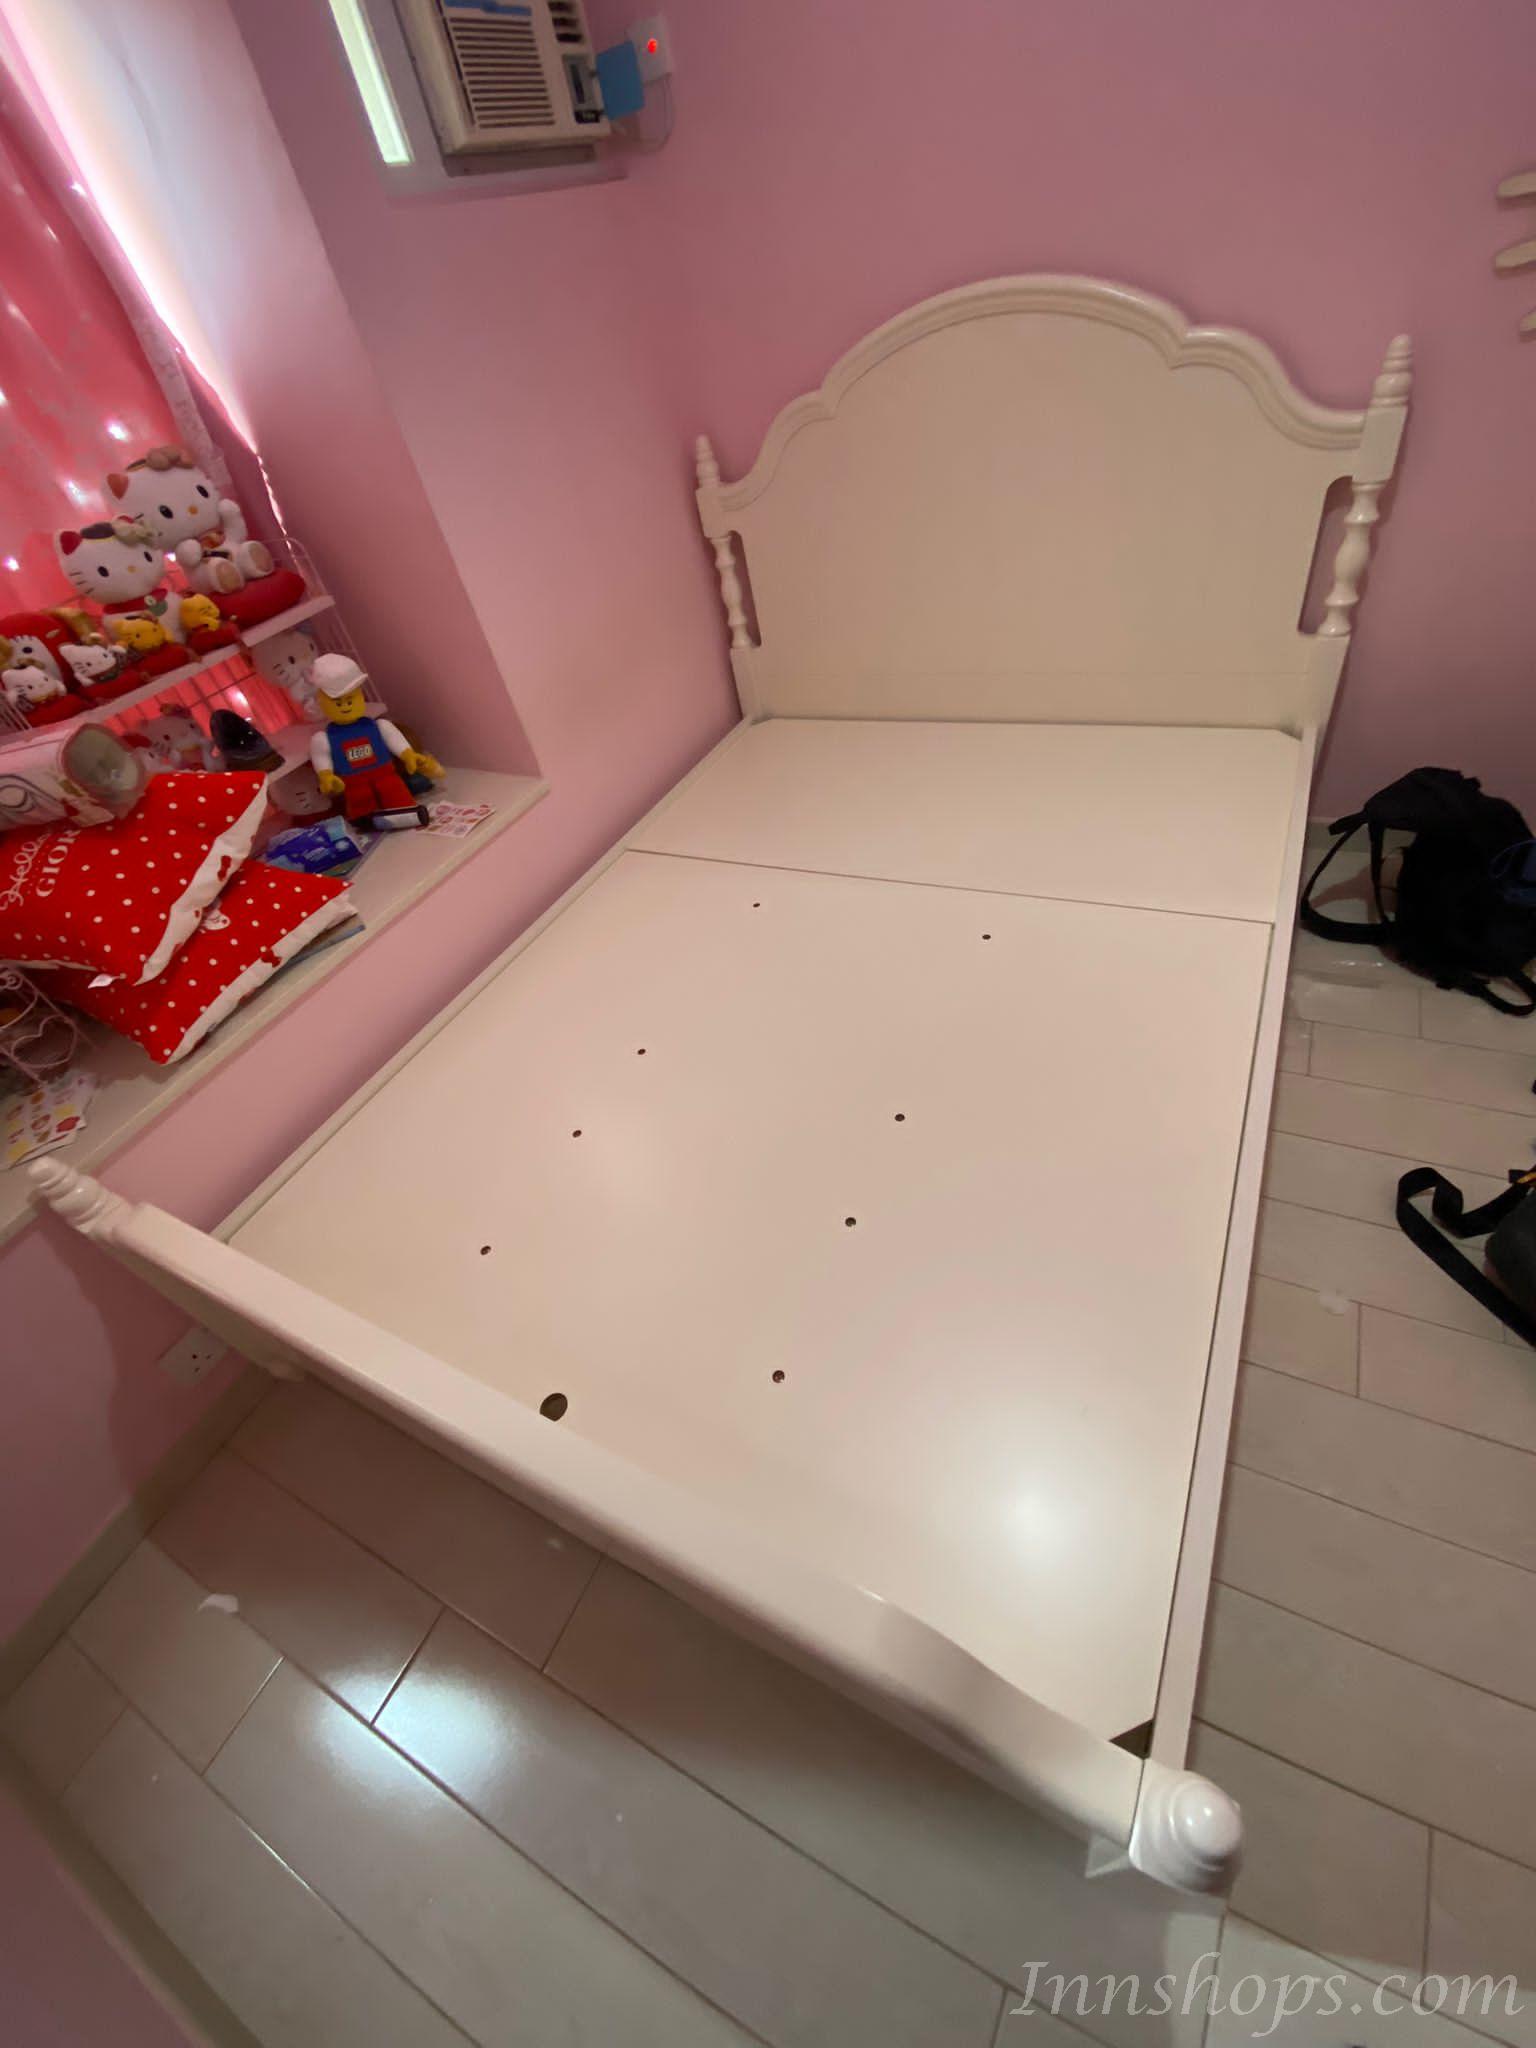 韓式雙人床公主床/成套衣櫃書桌床頭櫃家具組合套裝 小朋友床 *4呎/4呎半/5呎/6呎 (不包床褥)(IS7900)